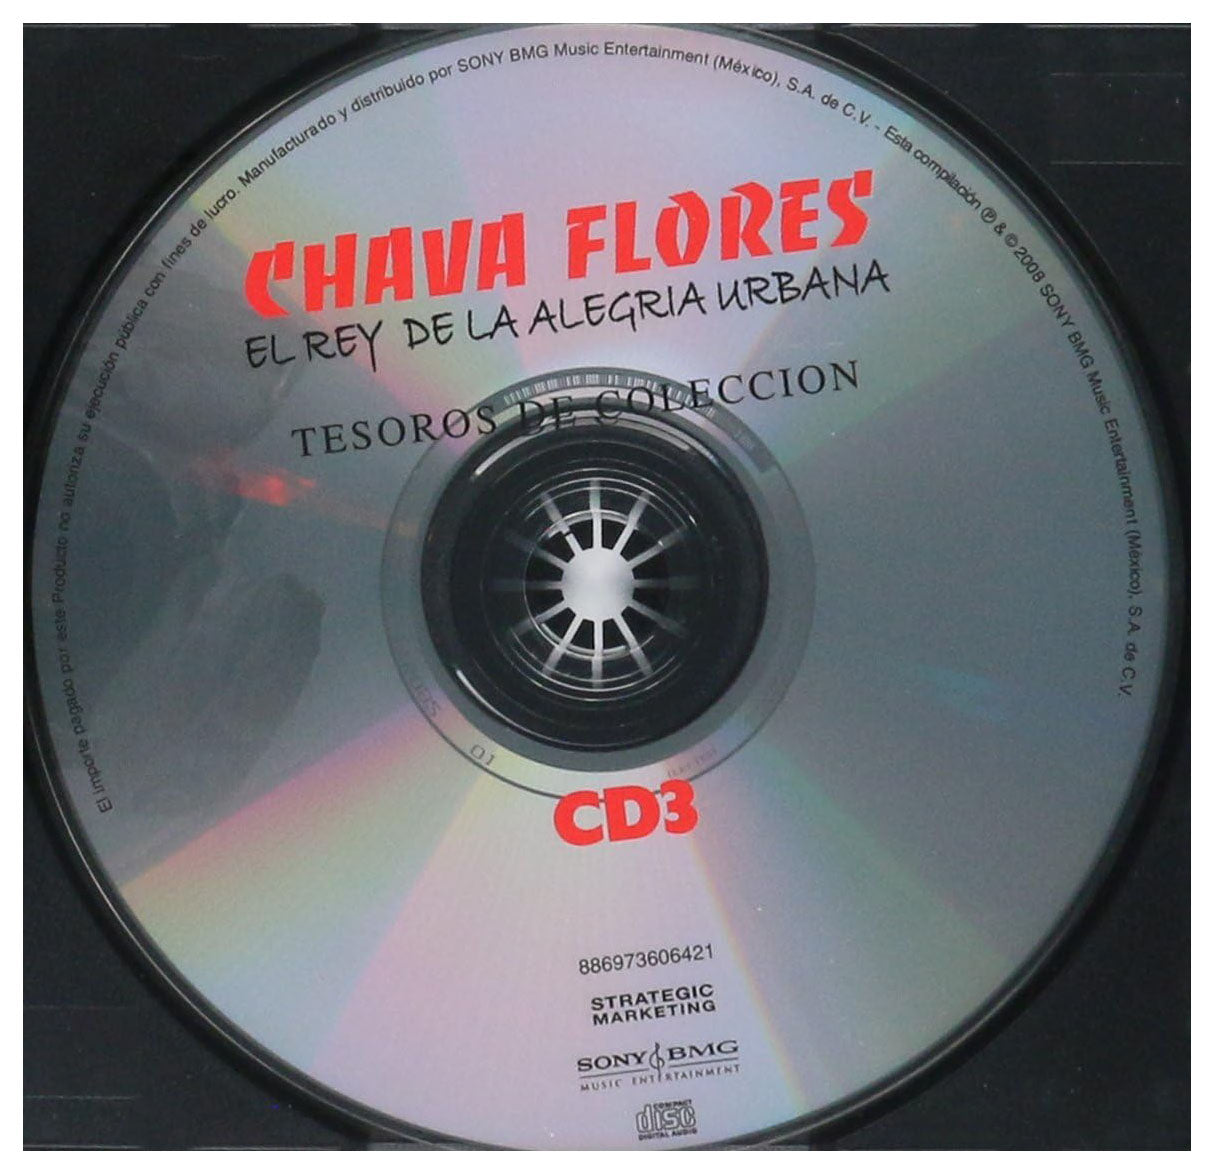 Chava Flores Tesoros De Coleccion El Rey De La Alegria Urbana 3CD